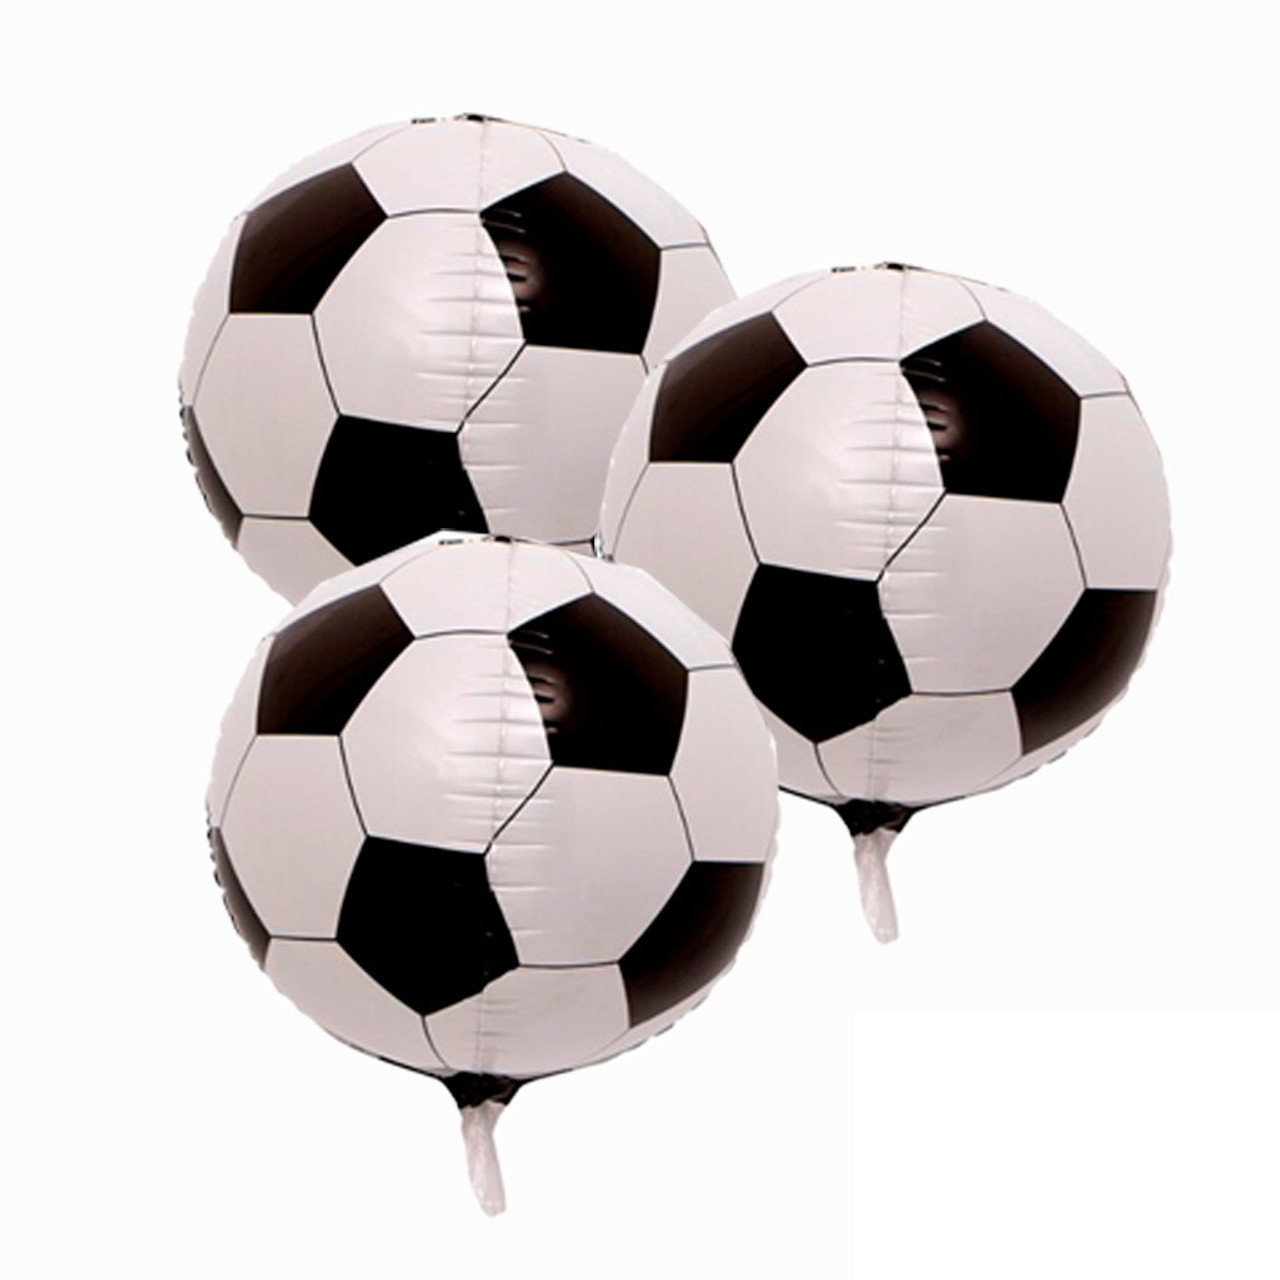 Comprar Globos fútbol balón (12)✓ en Fiestafacil.com por sólo 3,30 €. Envío  en 24h desde 3,99€